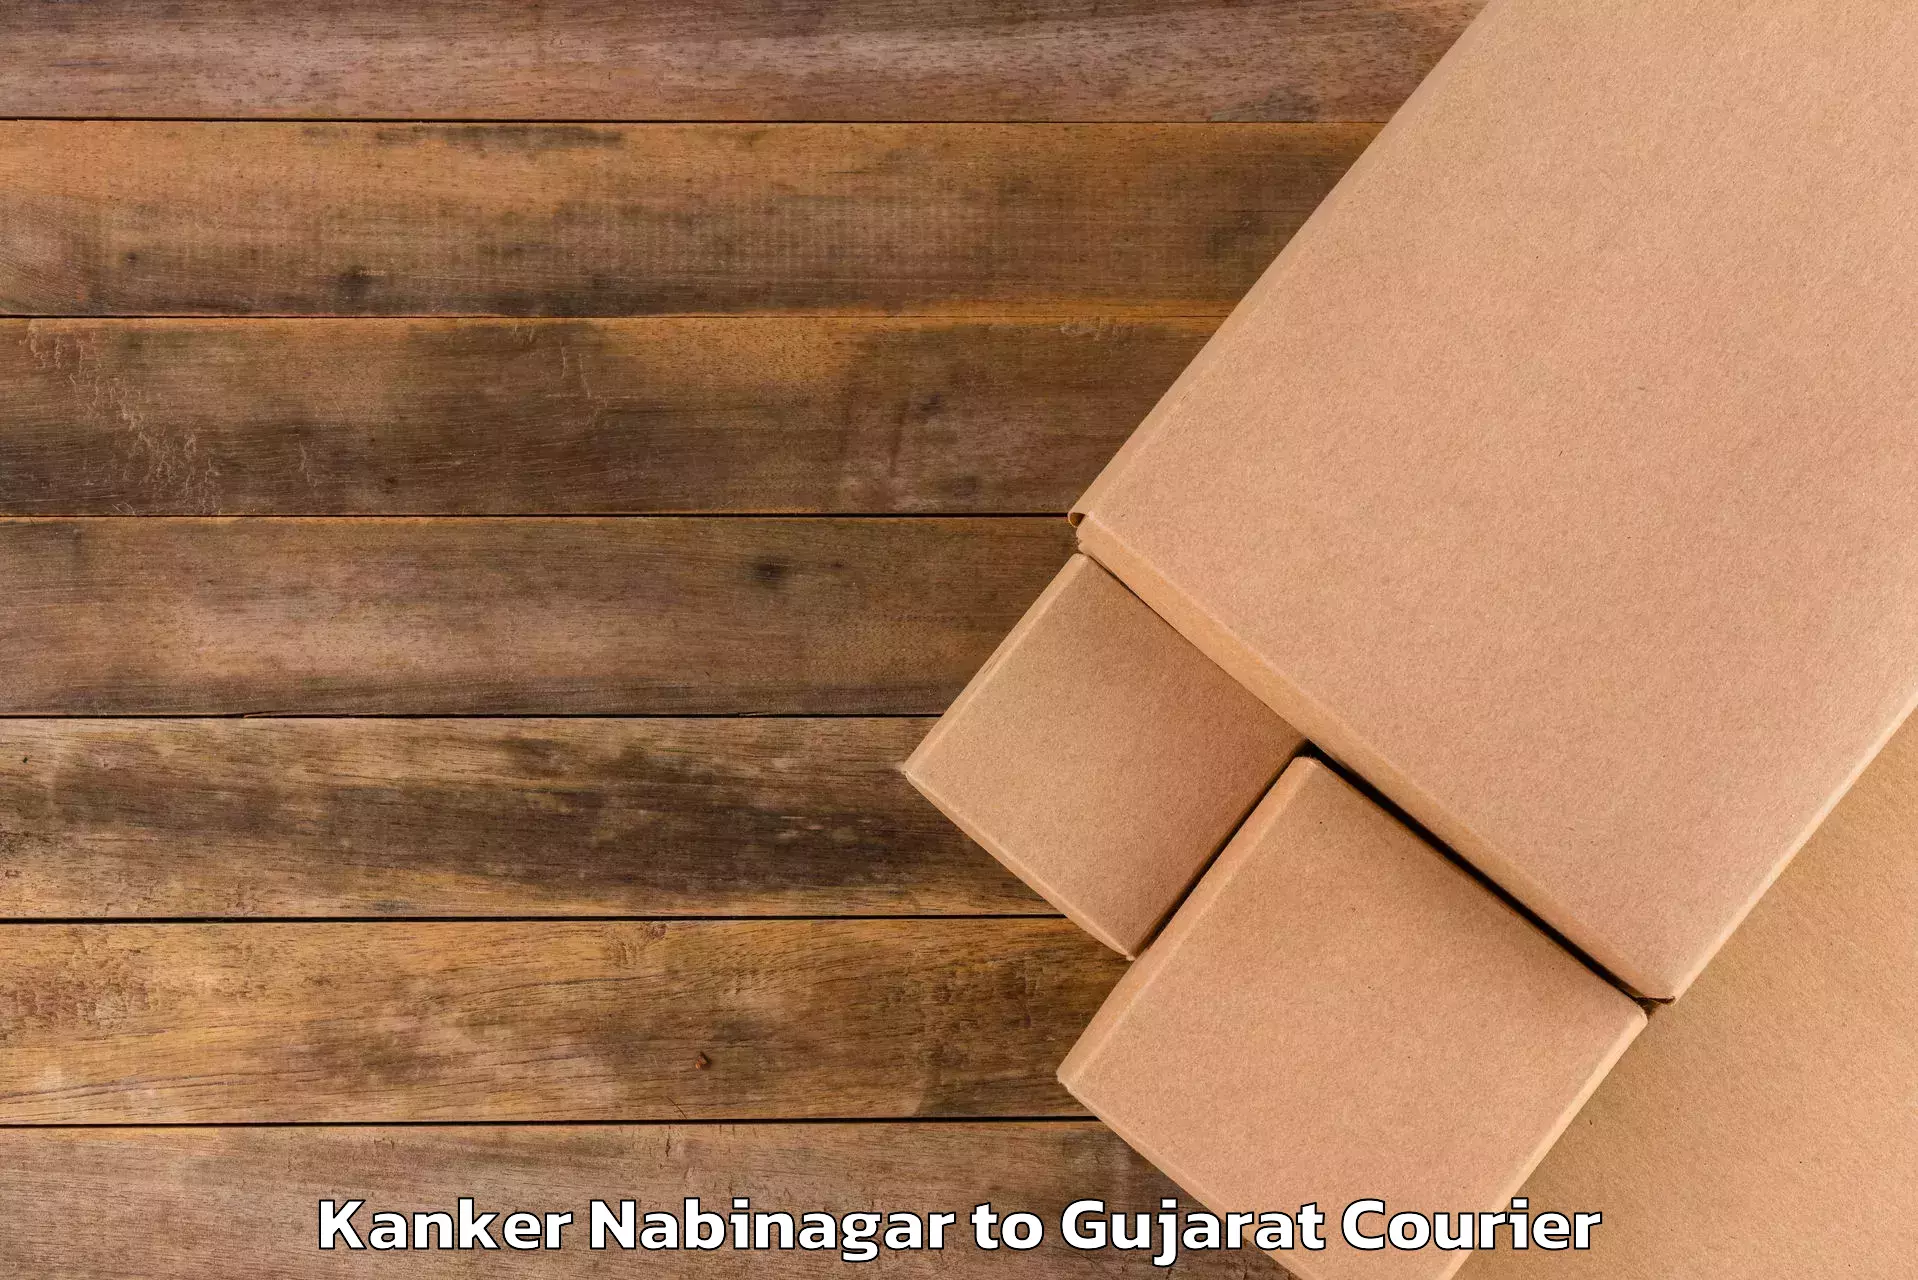 Luggage delivery estimate Kanker Nabinagar to Valsad